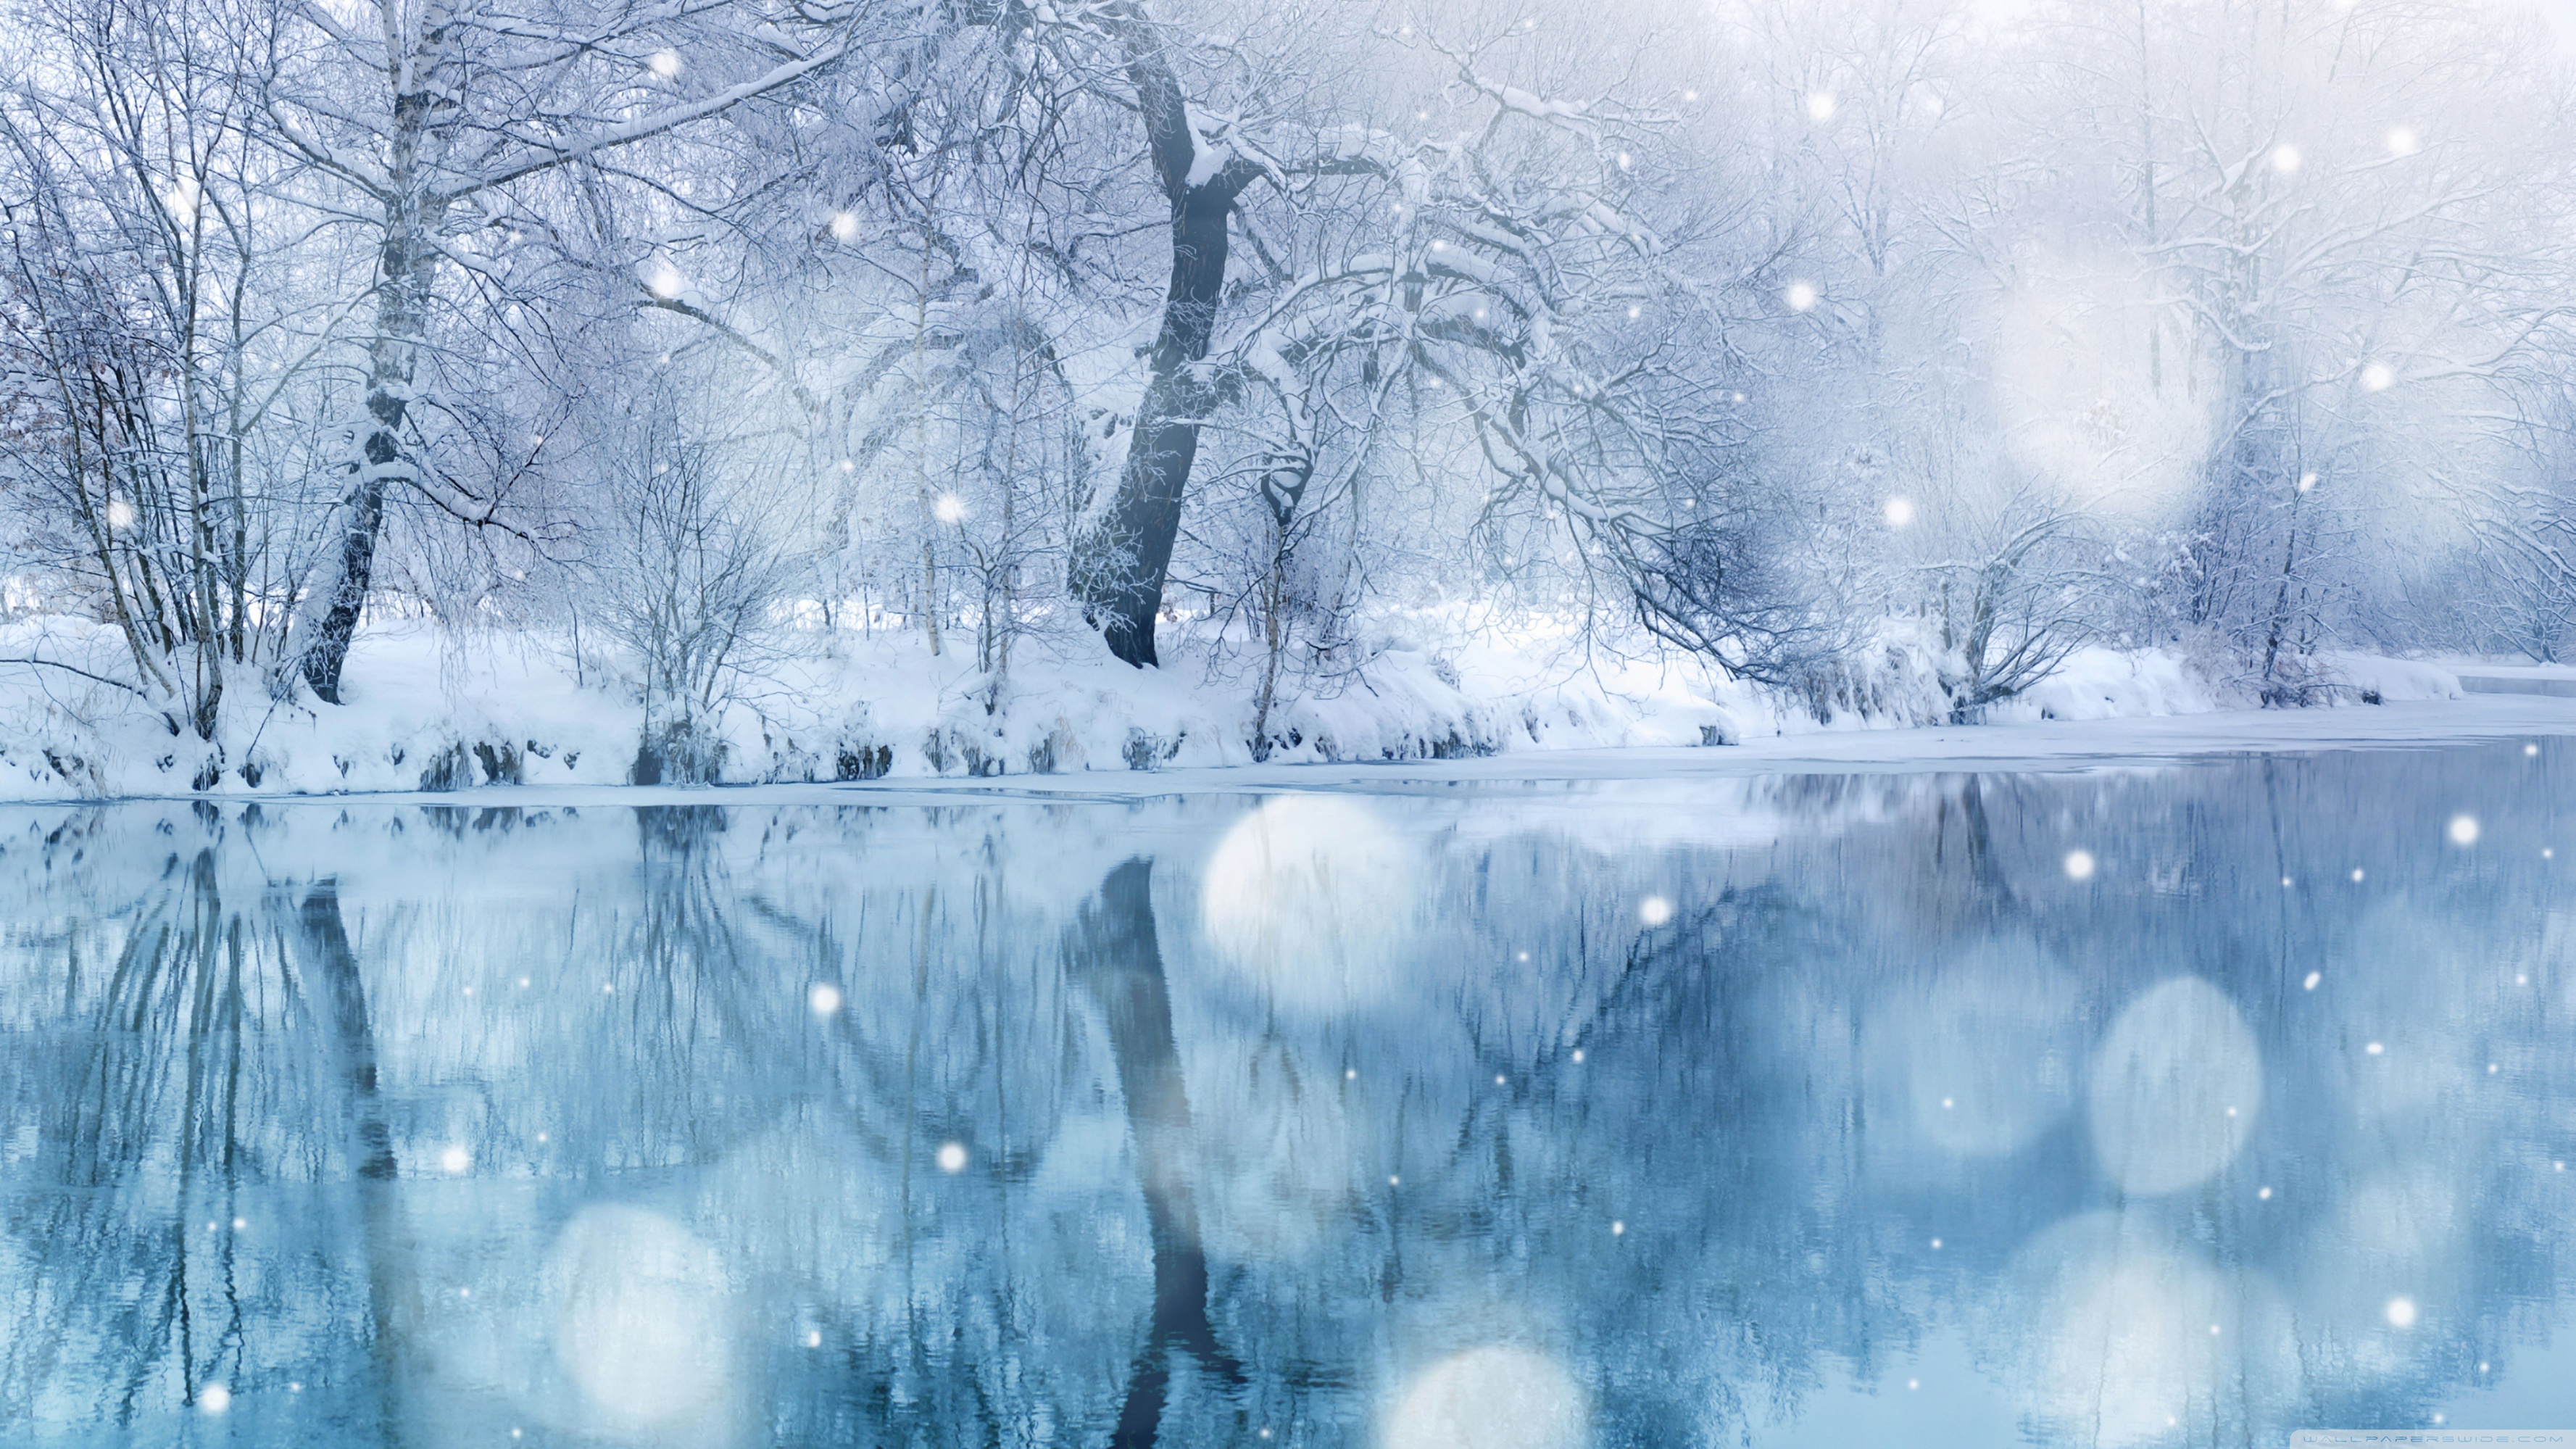 Hình nền Tuyết rơi (Snowing Desktop backgrounds): Cảm nhận tuyết rơi trên cửa sổ và lắng nghe tiếng tuyết rơi một cách thật yên bình. Hãy cập nhật hình nền máy tính của bạn với những hình ảnh tuyết rơi đẹp mắt để thưởng thức mùa đông lãng mạn hơn.